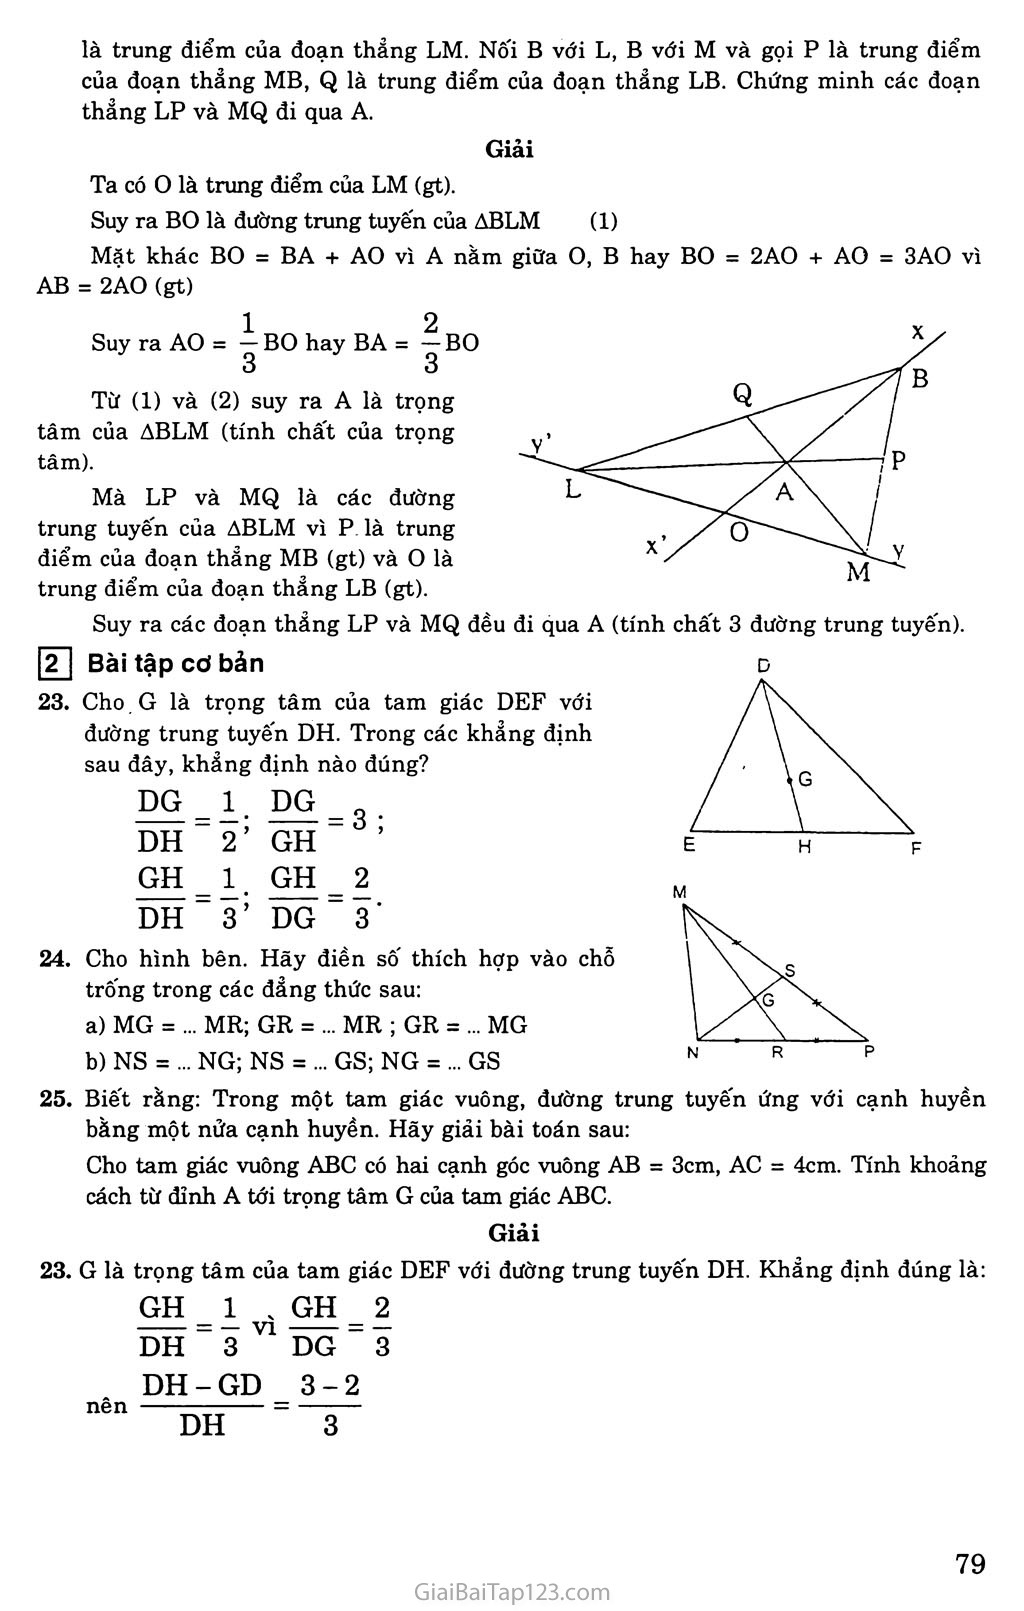 Bài 4. Tính chất ba đường trung tuyến của tam giác trang 2